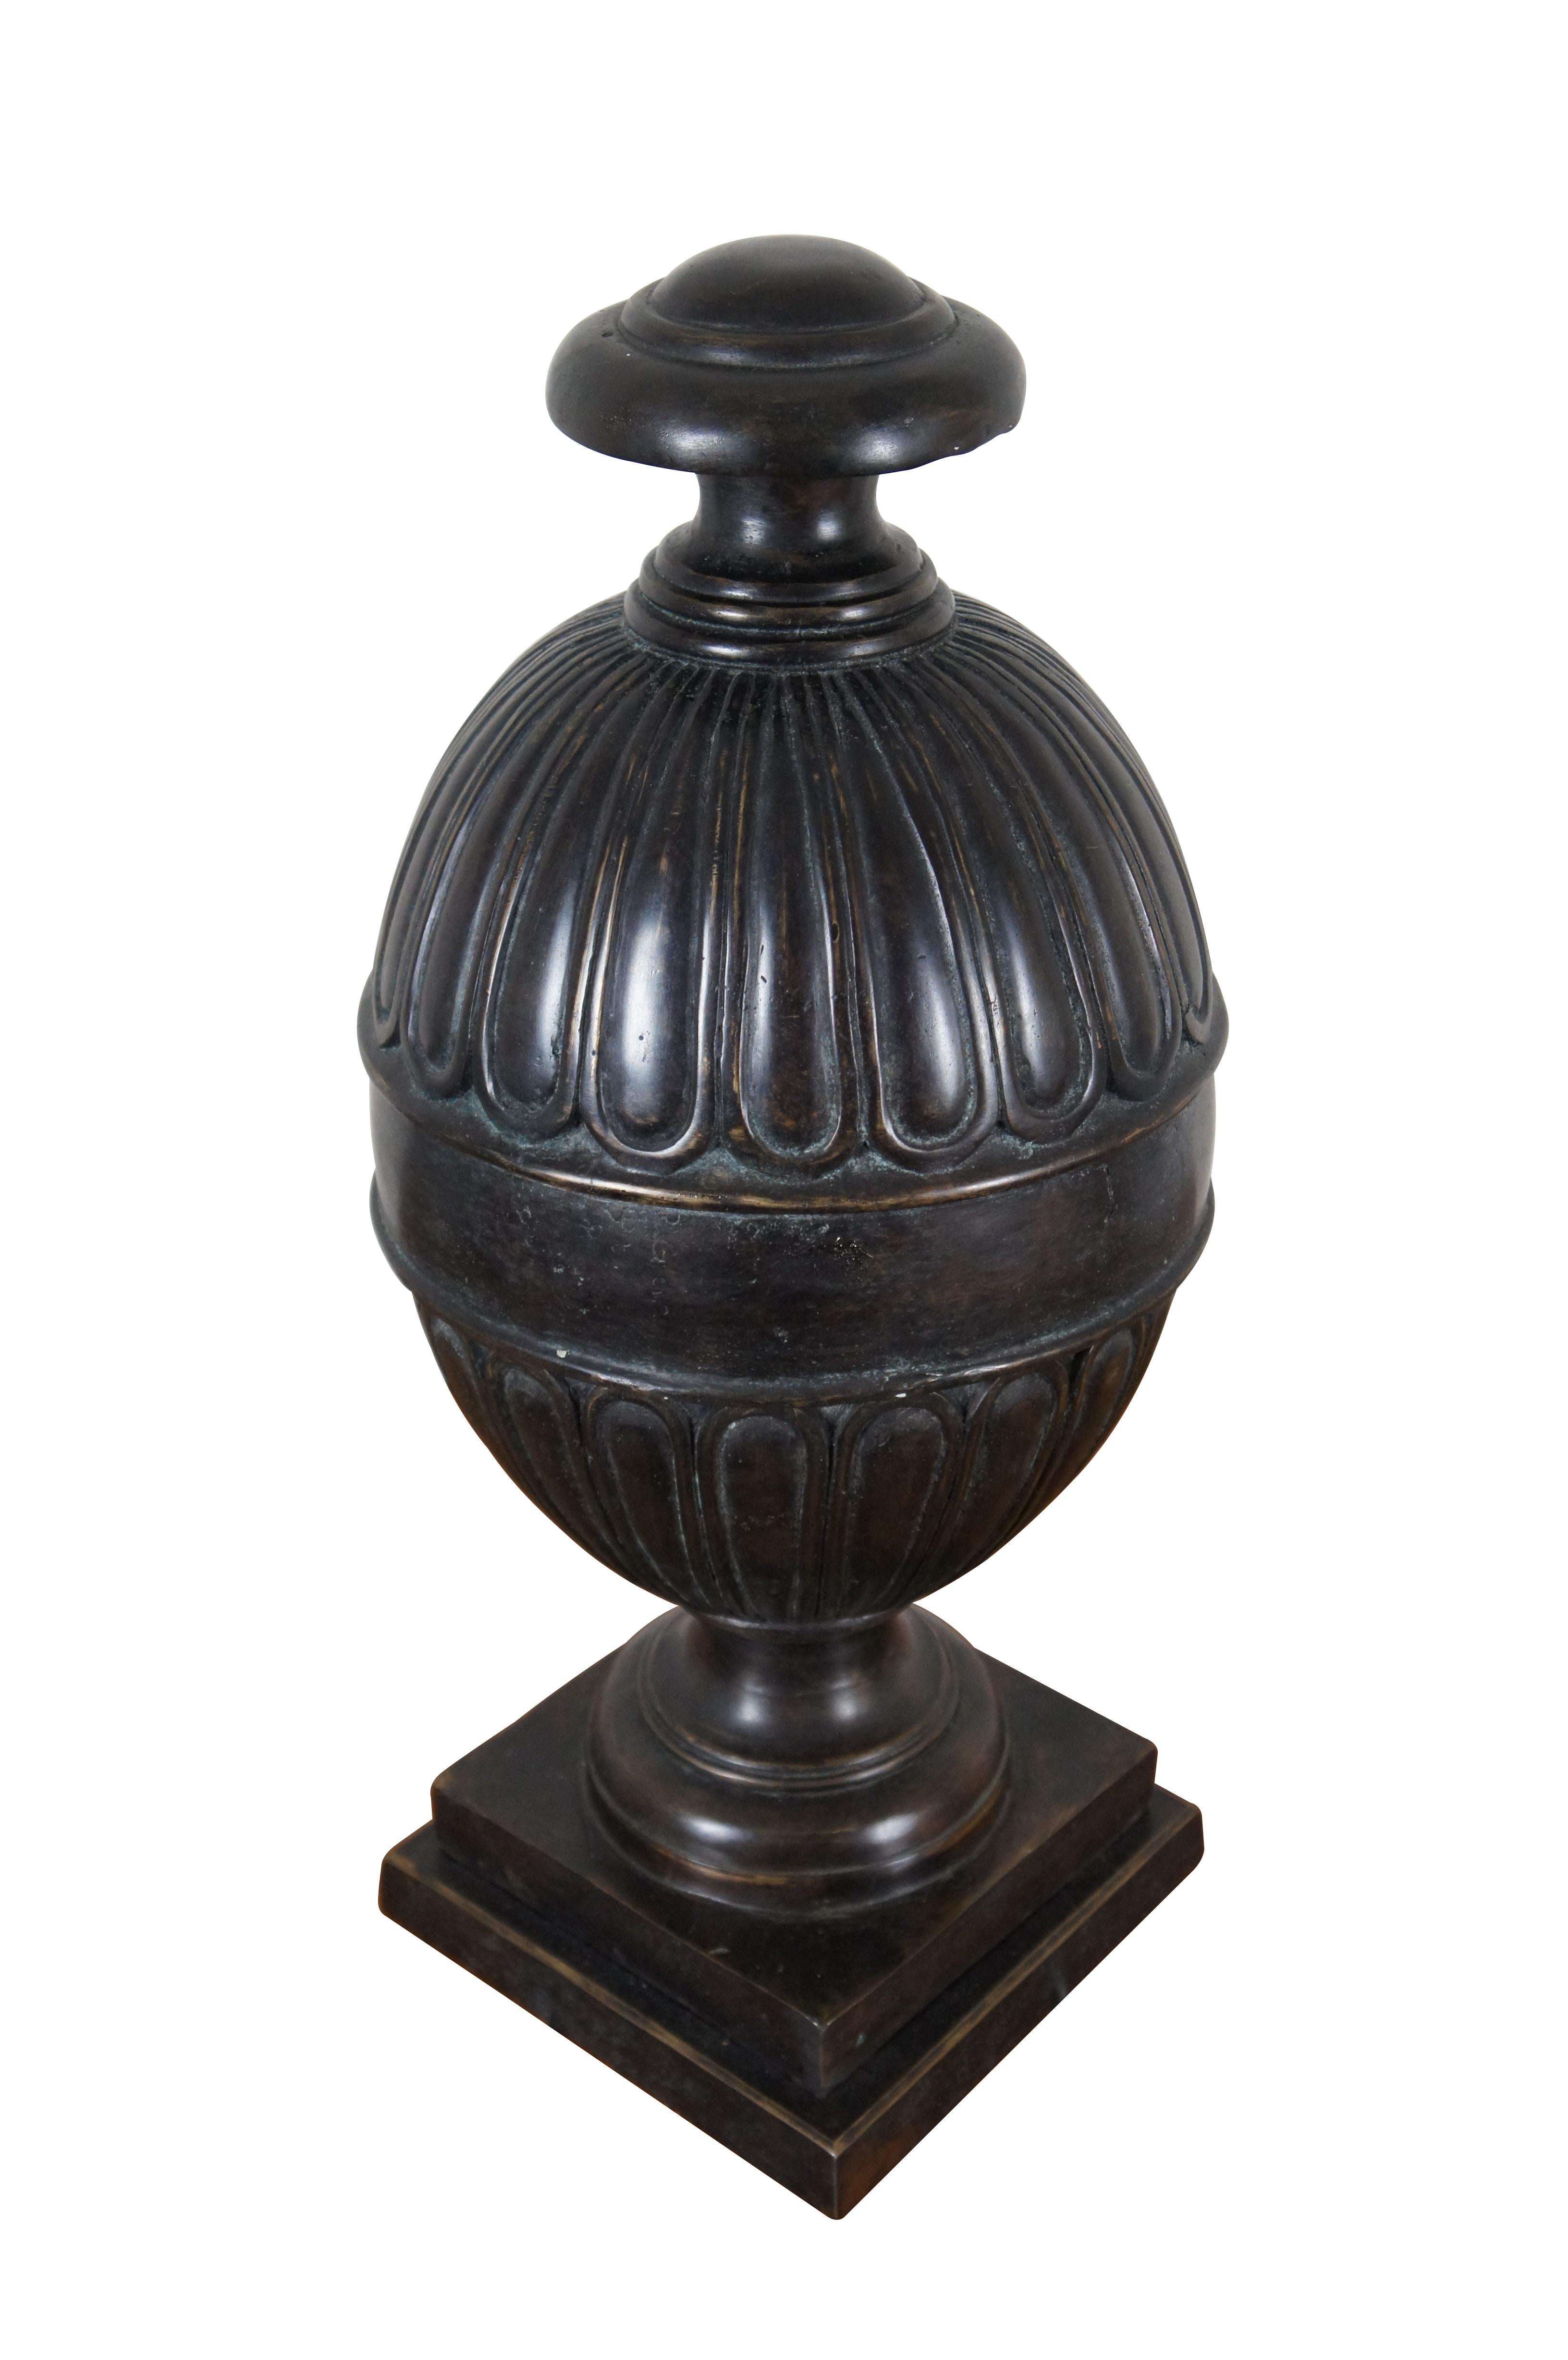 Urne / vase ou compotier de cheminée vintage en bronze de Maitland Smith, de style néoclassique, avec une base à piédestal supportant une boîte / jarre en forme d'œuf.

Dimensions :
9,75